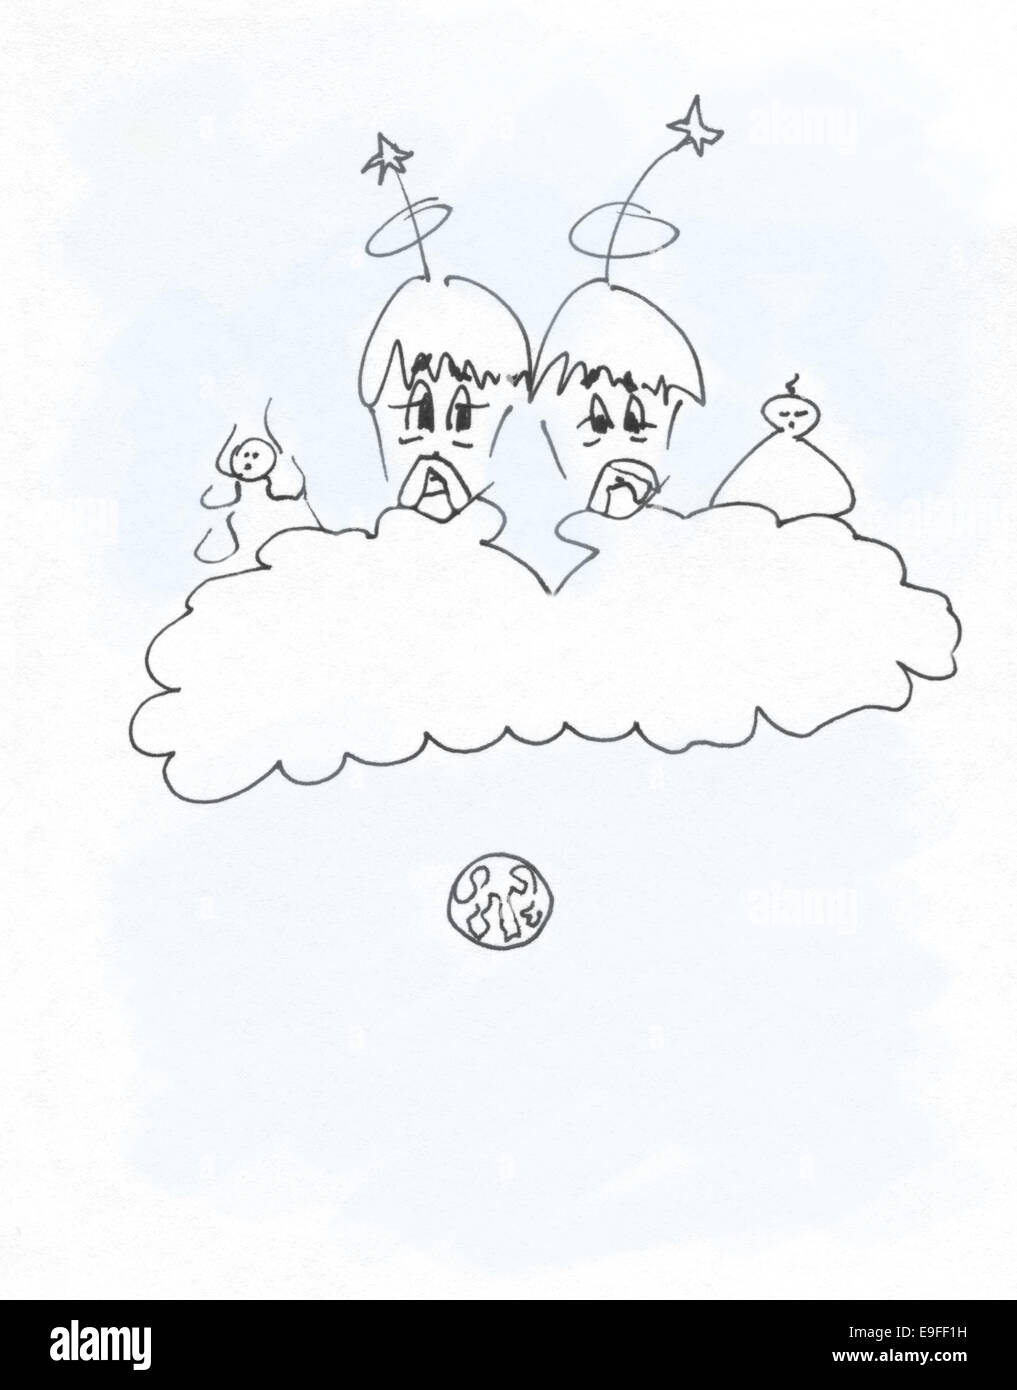 Angeli Con Atteggiamento Cartoon Penna Disegno In Bianco E